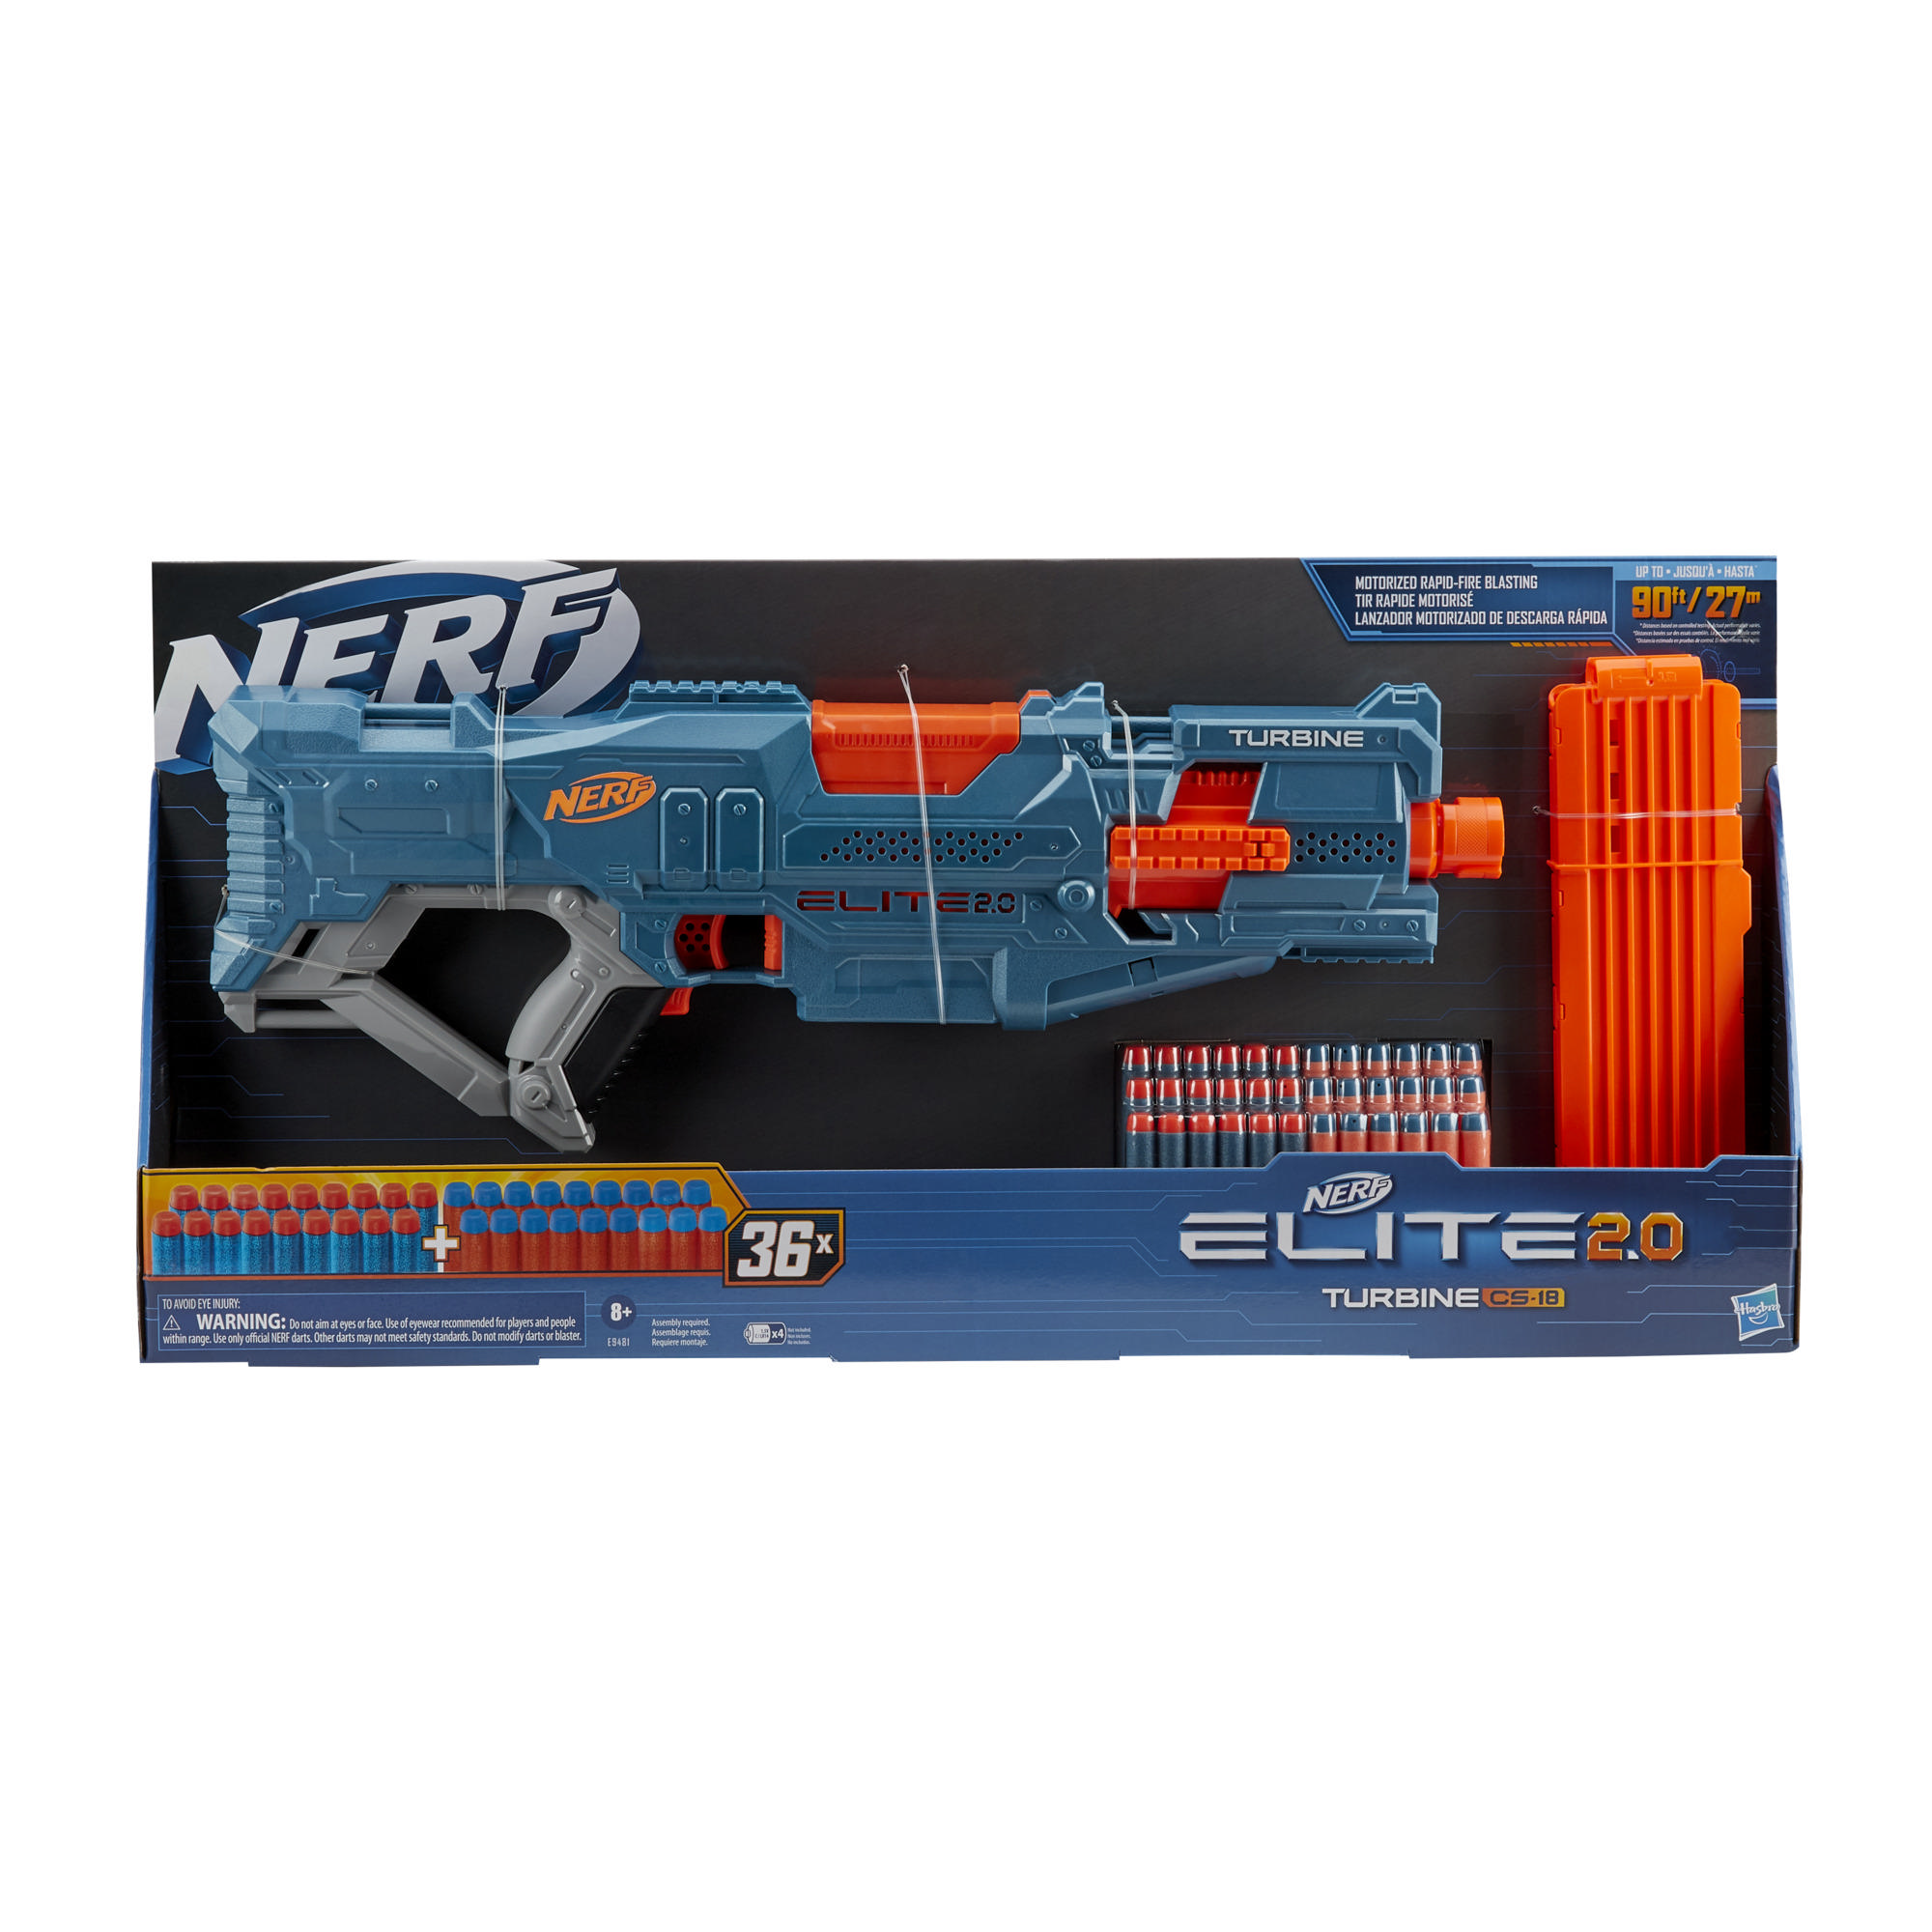 Mysterieus Bijna dood dubbele Nerf|Nerf Elite 2.0 Turbine CS-18 gemotoriseerde blaster, 36 Nerf-darts,  magazijn voor 18 darts, ingebouwde aanpassingsmogelijkheden